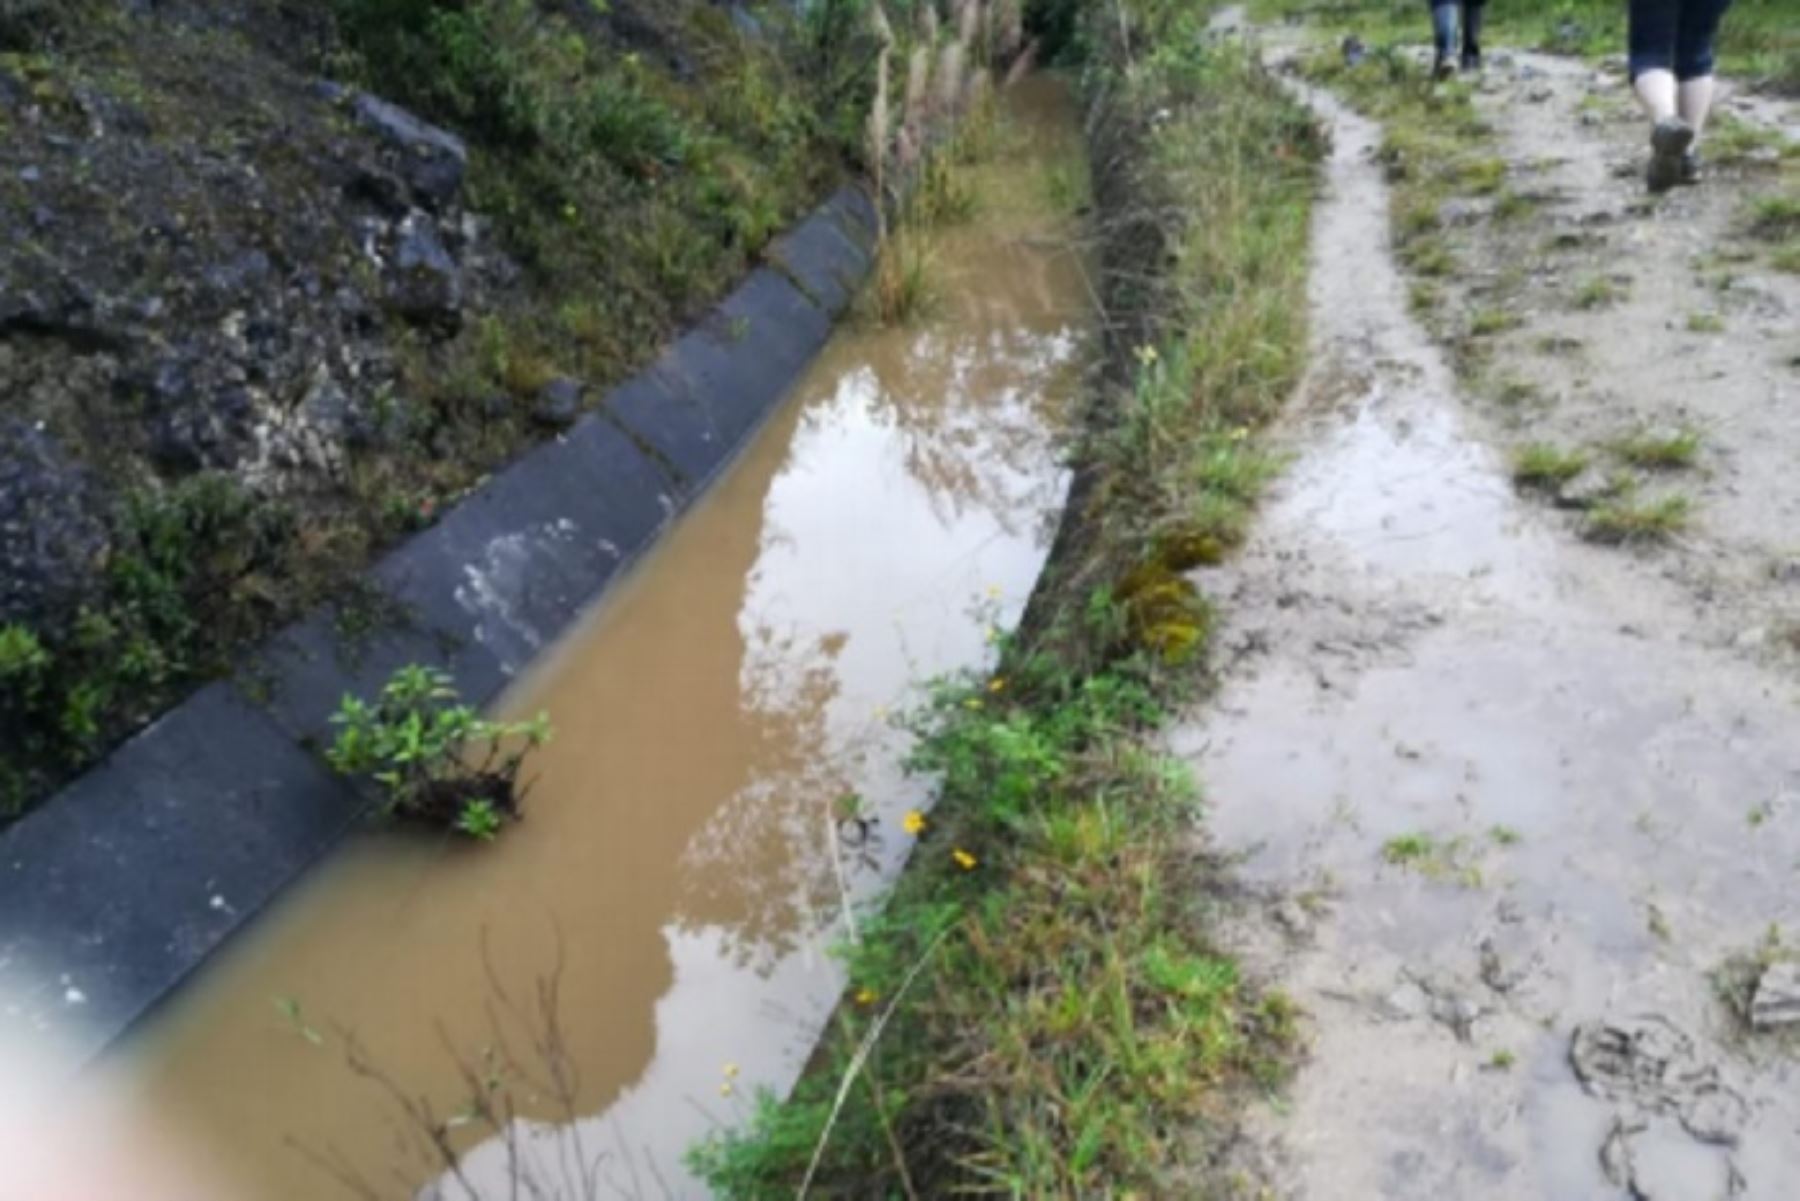 Las fuertes lluvias causaron un deslizamiento de tierra que produjo el desborde del canal de riego “Cendamal El Toro” y afectó cultivos de papa y habas en el caserío de Tahuan, distrito de Huasmín, provincia de Celendín, región Cajamarca, informó el Instituto Nacional de Defensa Civil (Indeci).